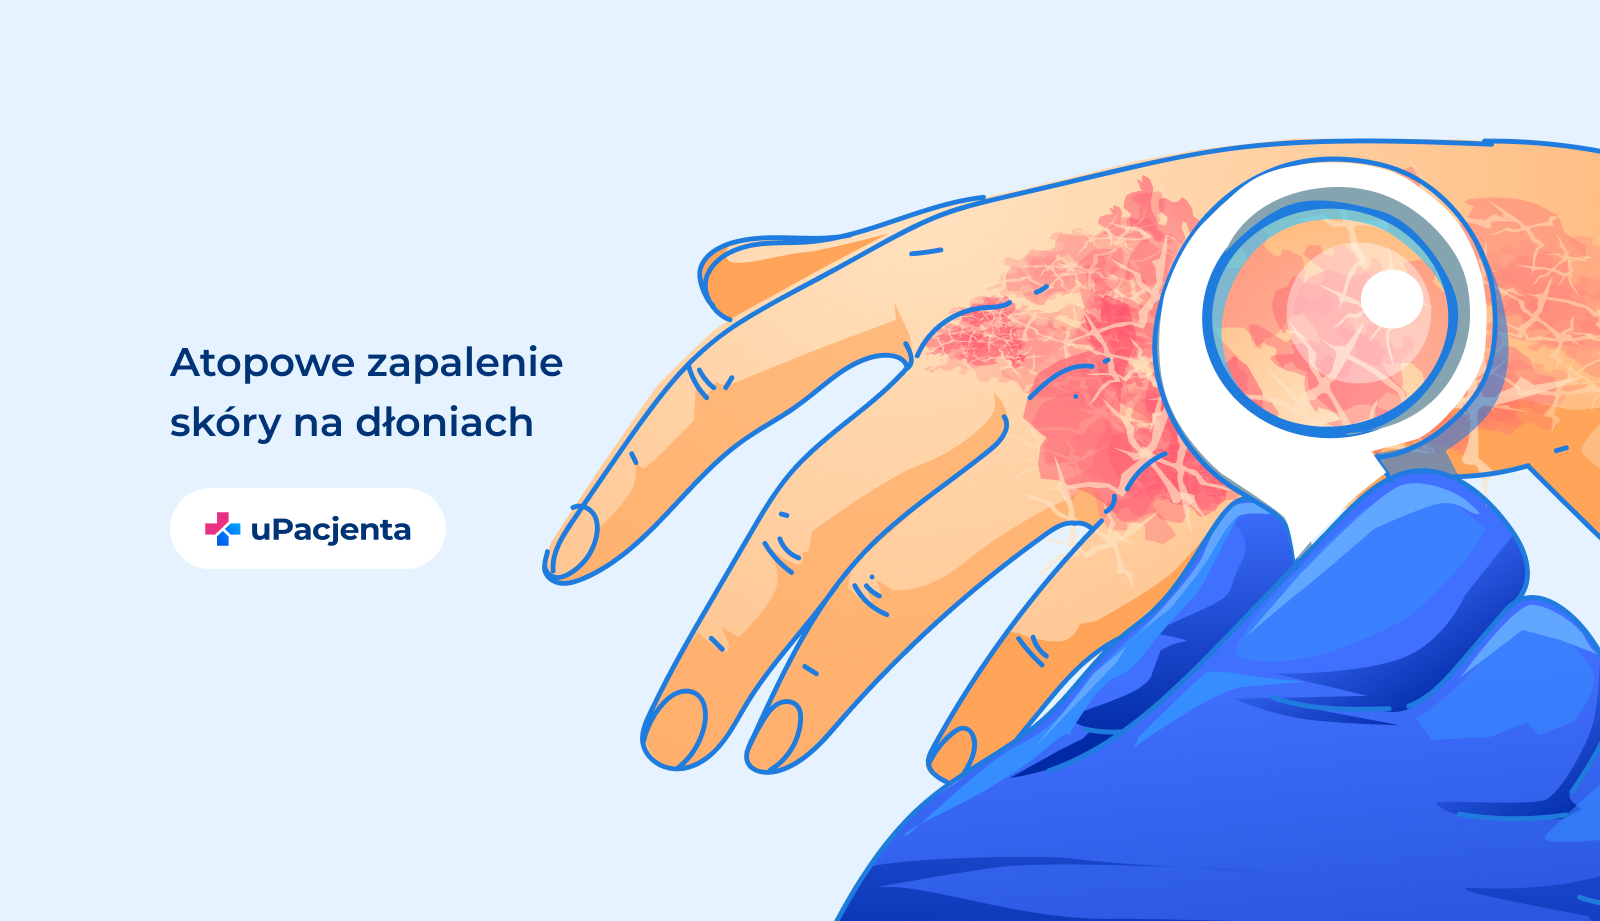 AZS dłonie. Grafika przedstawia atopowe zapalenie skóry na dłoniach.